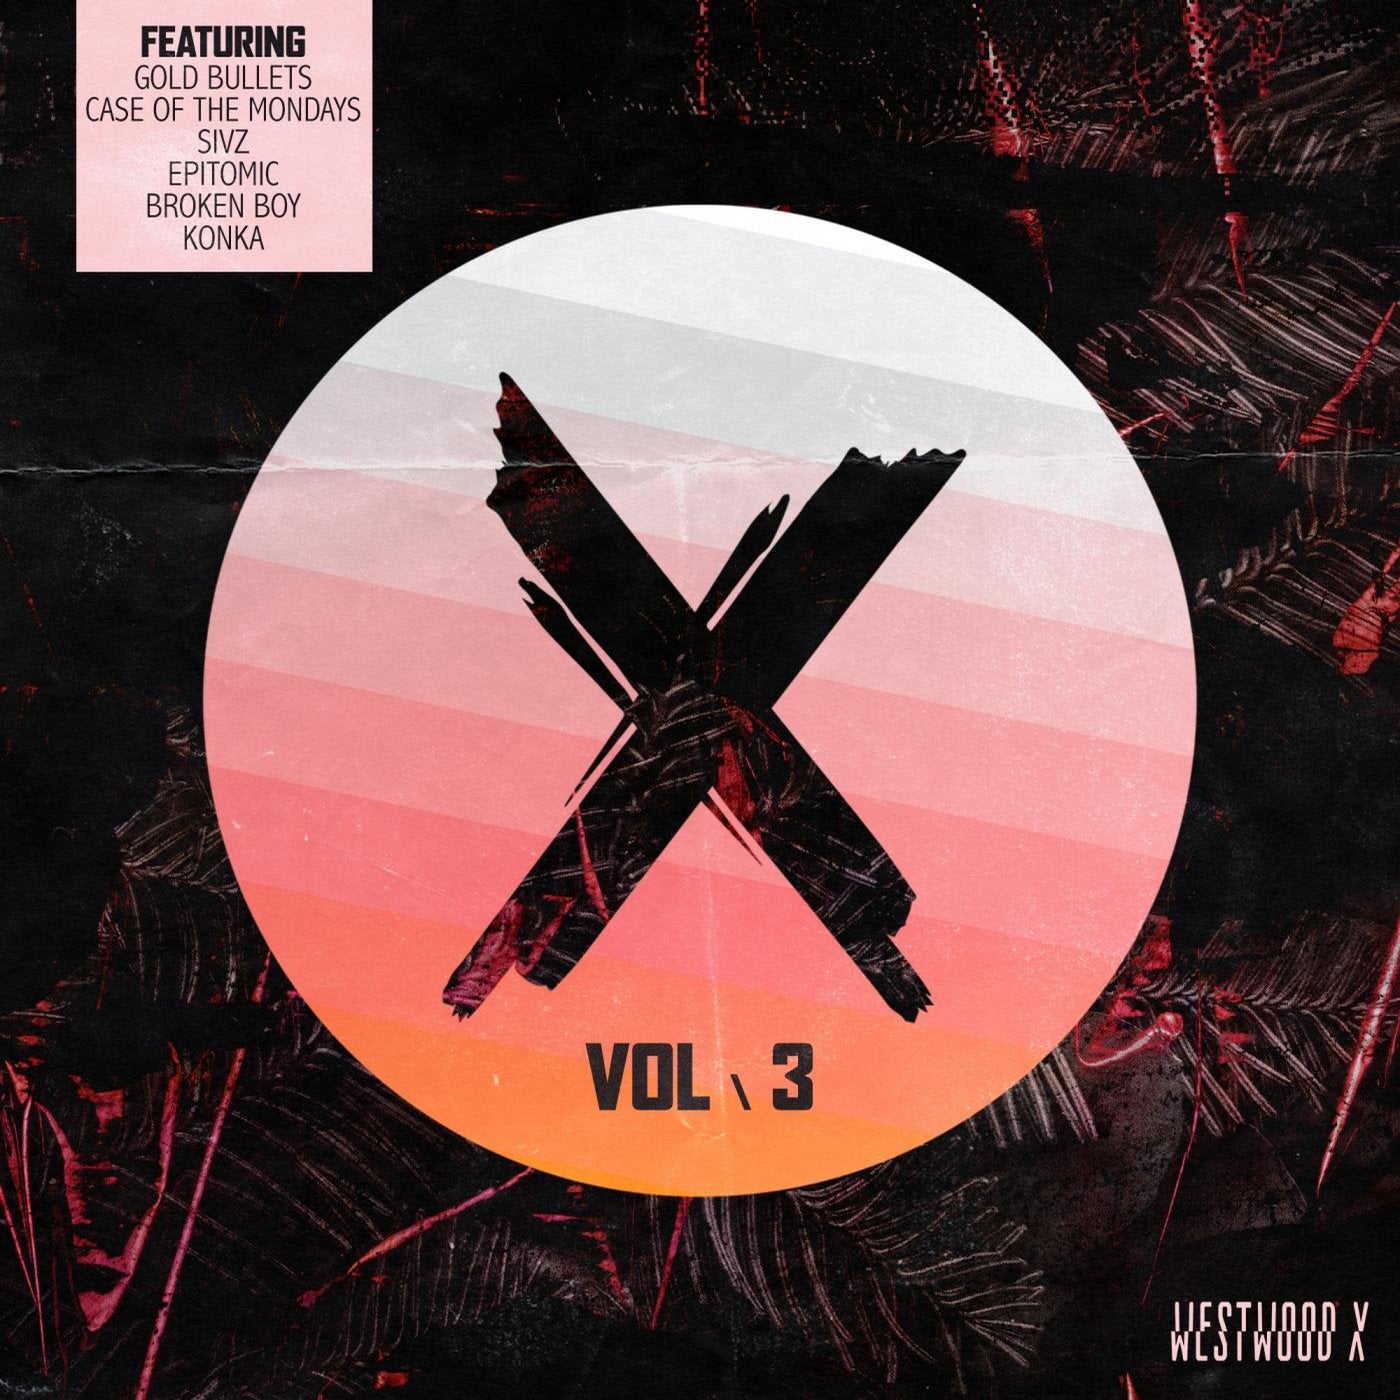 X's Vol. 3